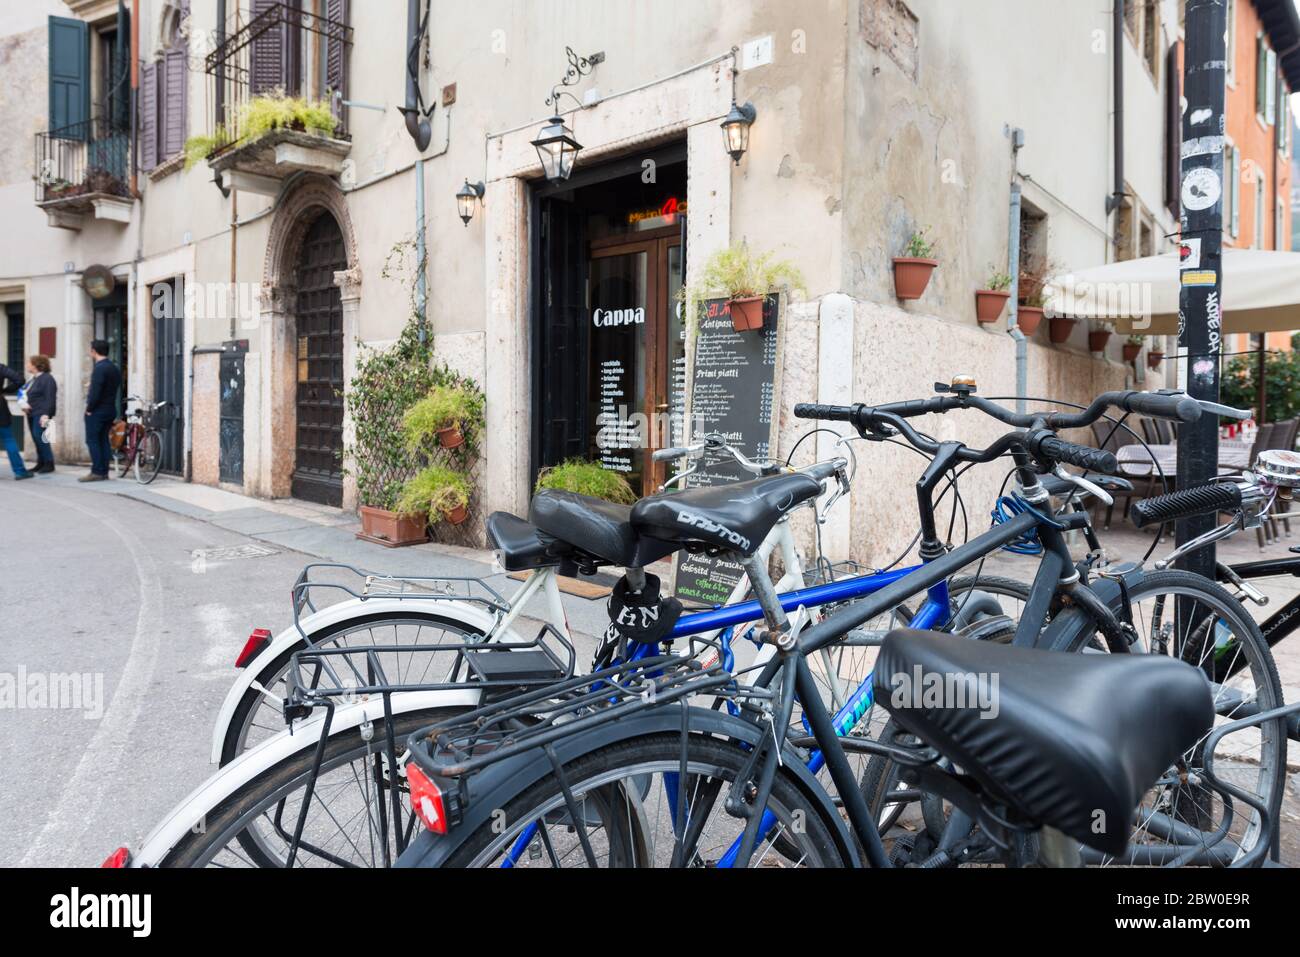 VERONA, ITALIA - 15, MARZO, 2018: Imagen horizontal de bicicletas estacionadas en las calles de Verona, Italia Foto de stock